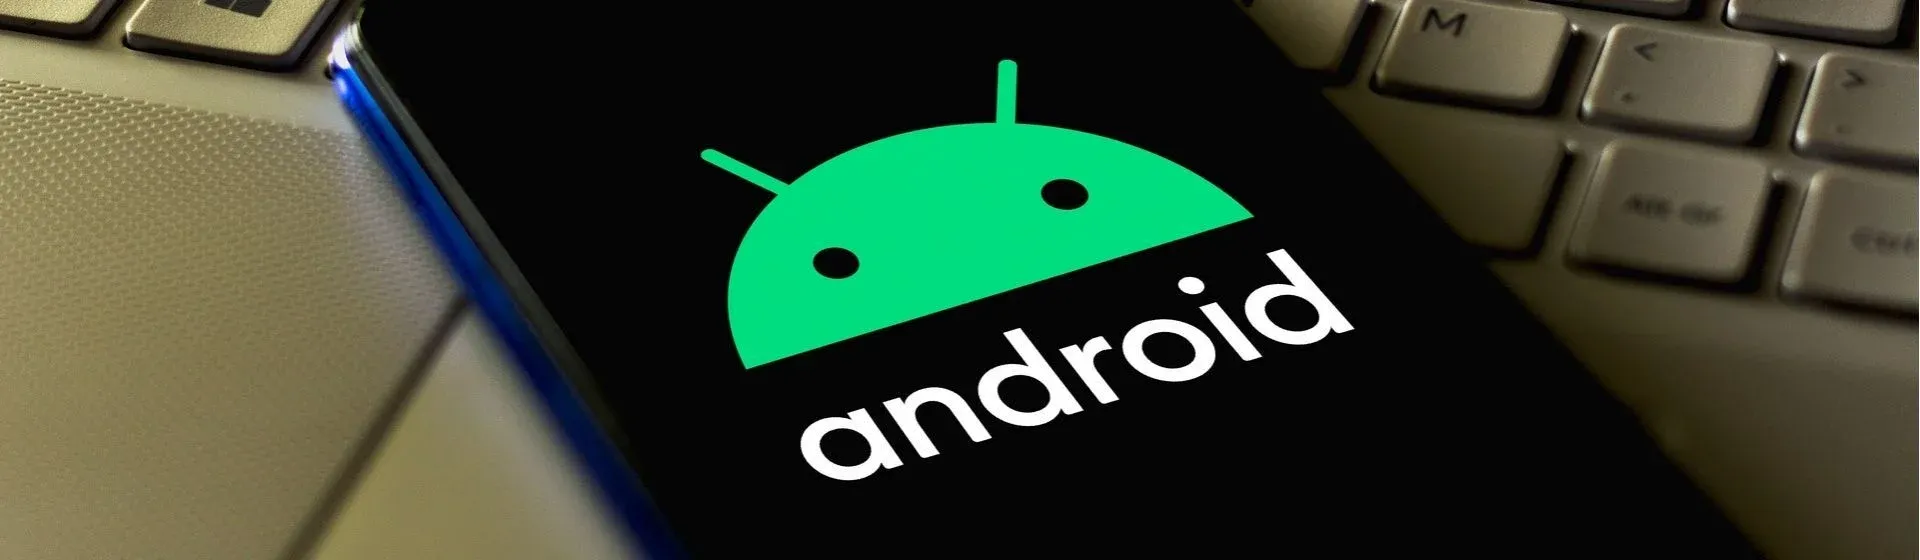 Modo desenvolvedor Android: para que serve e como ativar